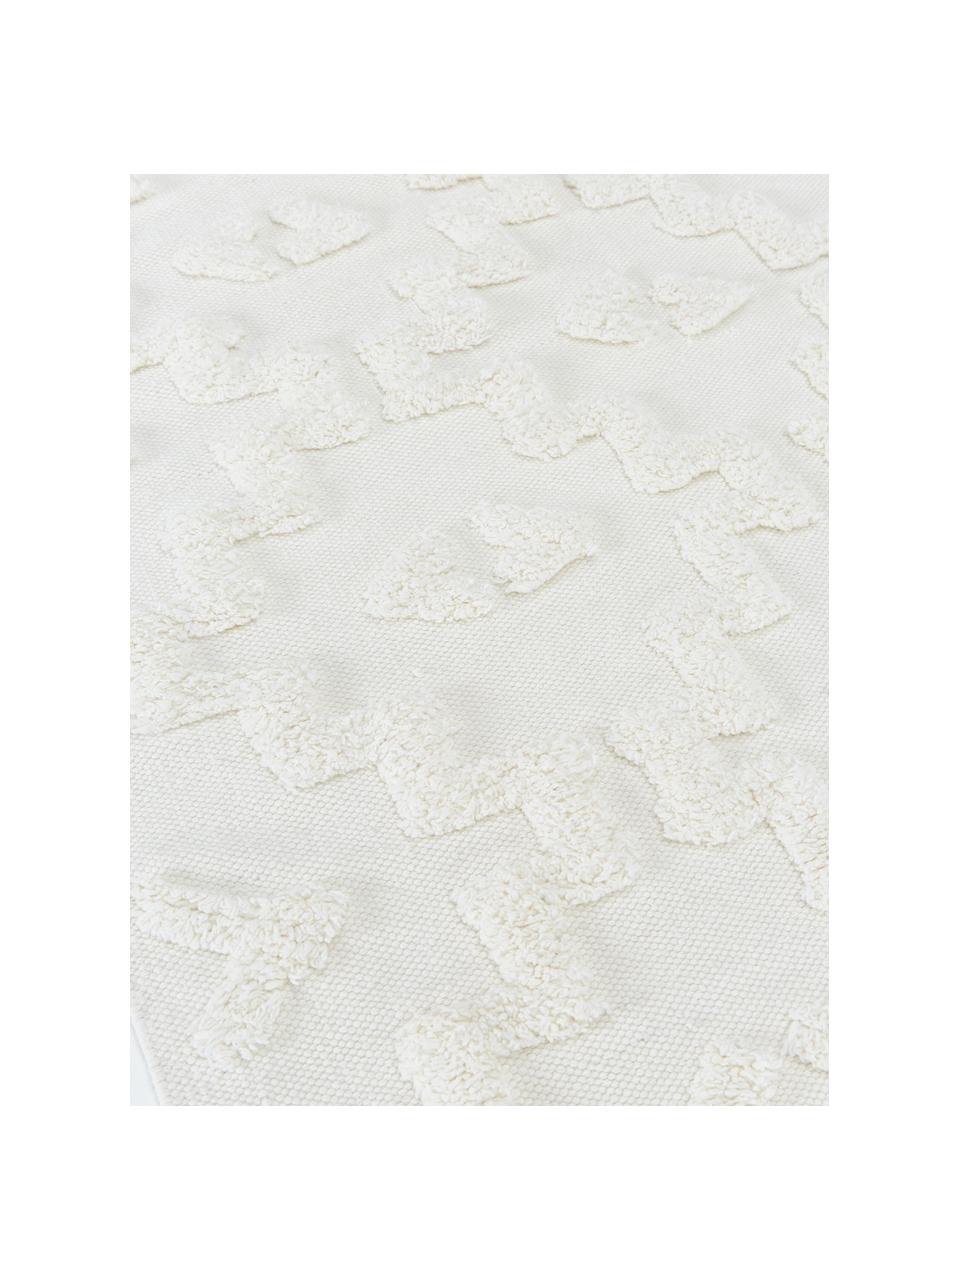 Passatoia in cotone tessuta a mano con struttura in rilievo Idris, 100% cotone, Bianco crema, Larg. 80 x Lung. 200 cm